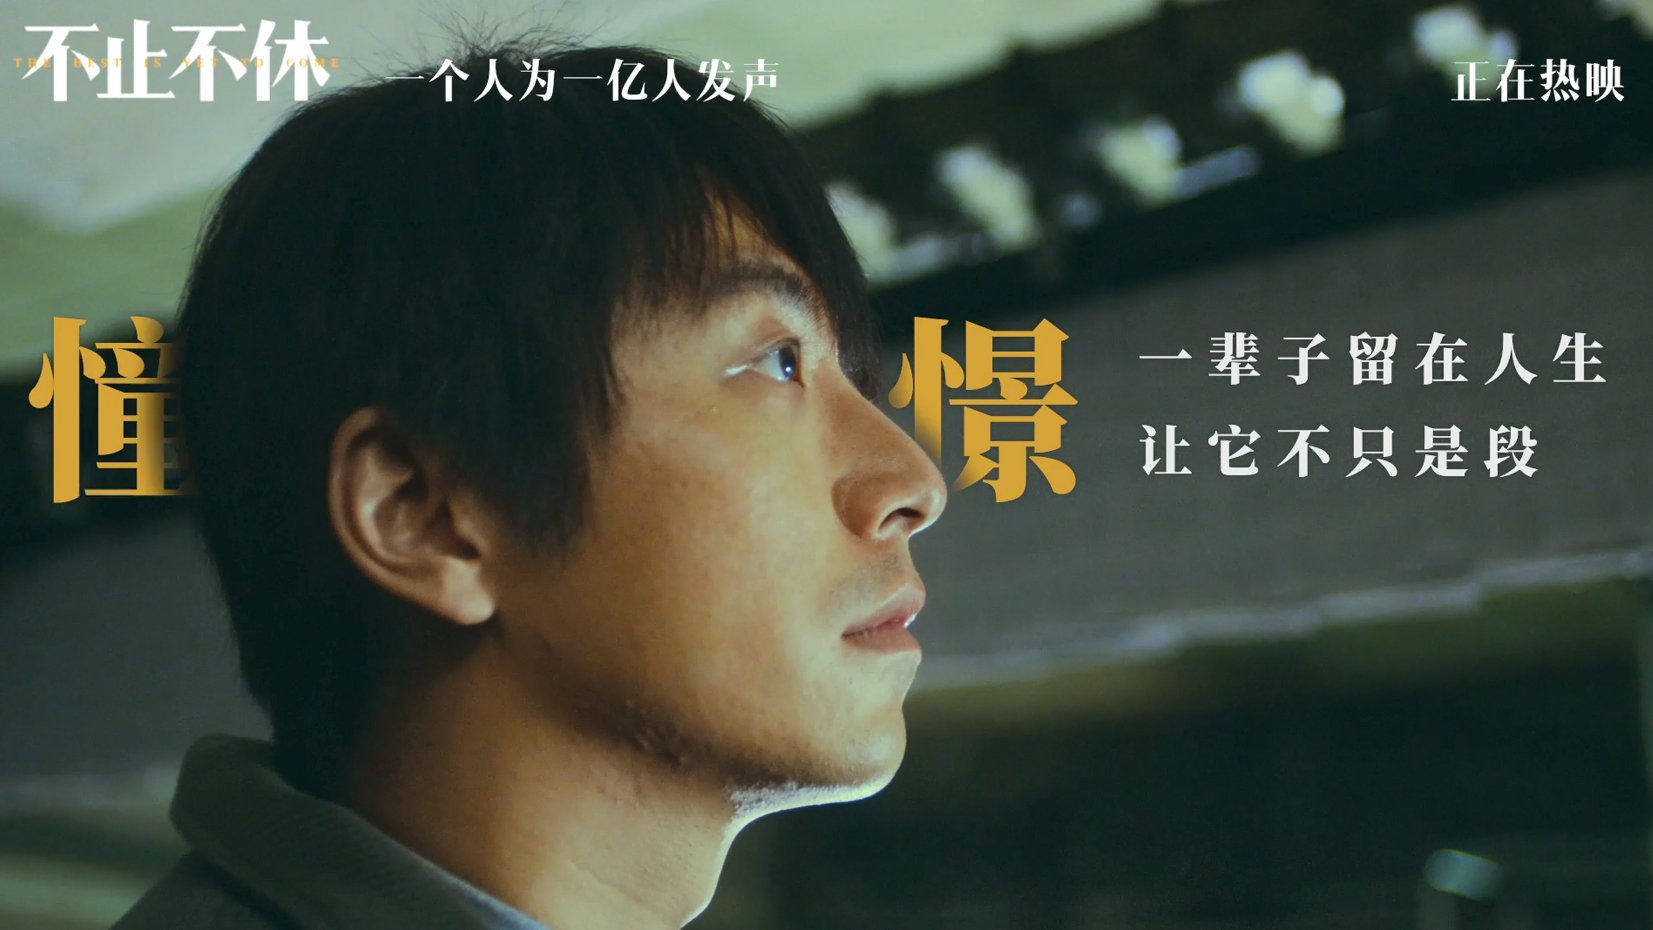 电影《不止不休》发布由FOX胡天渝演唱的推广曲《选择》MV